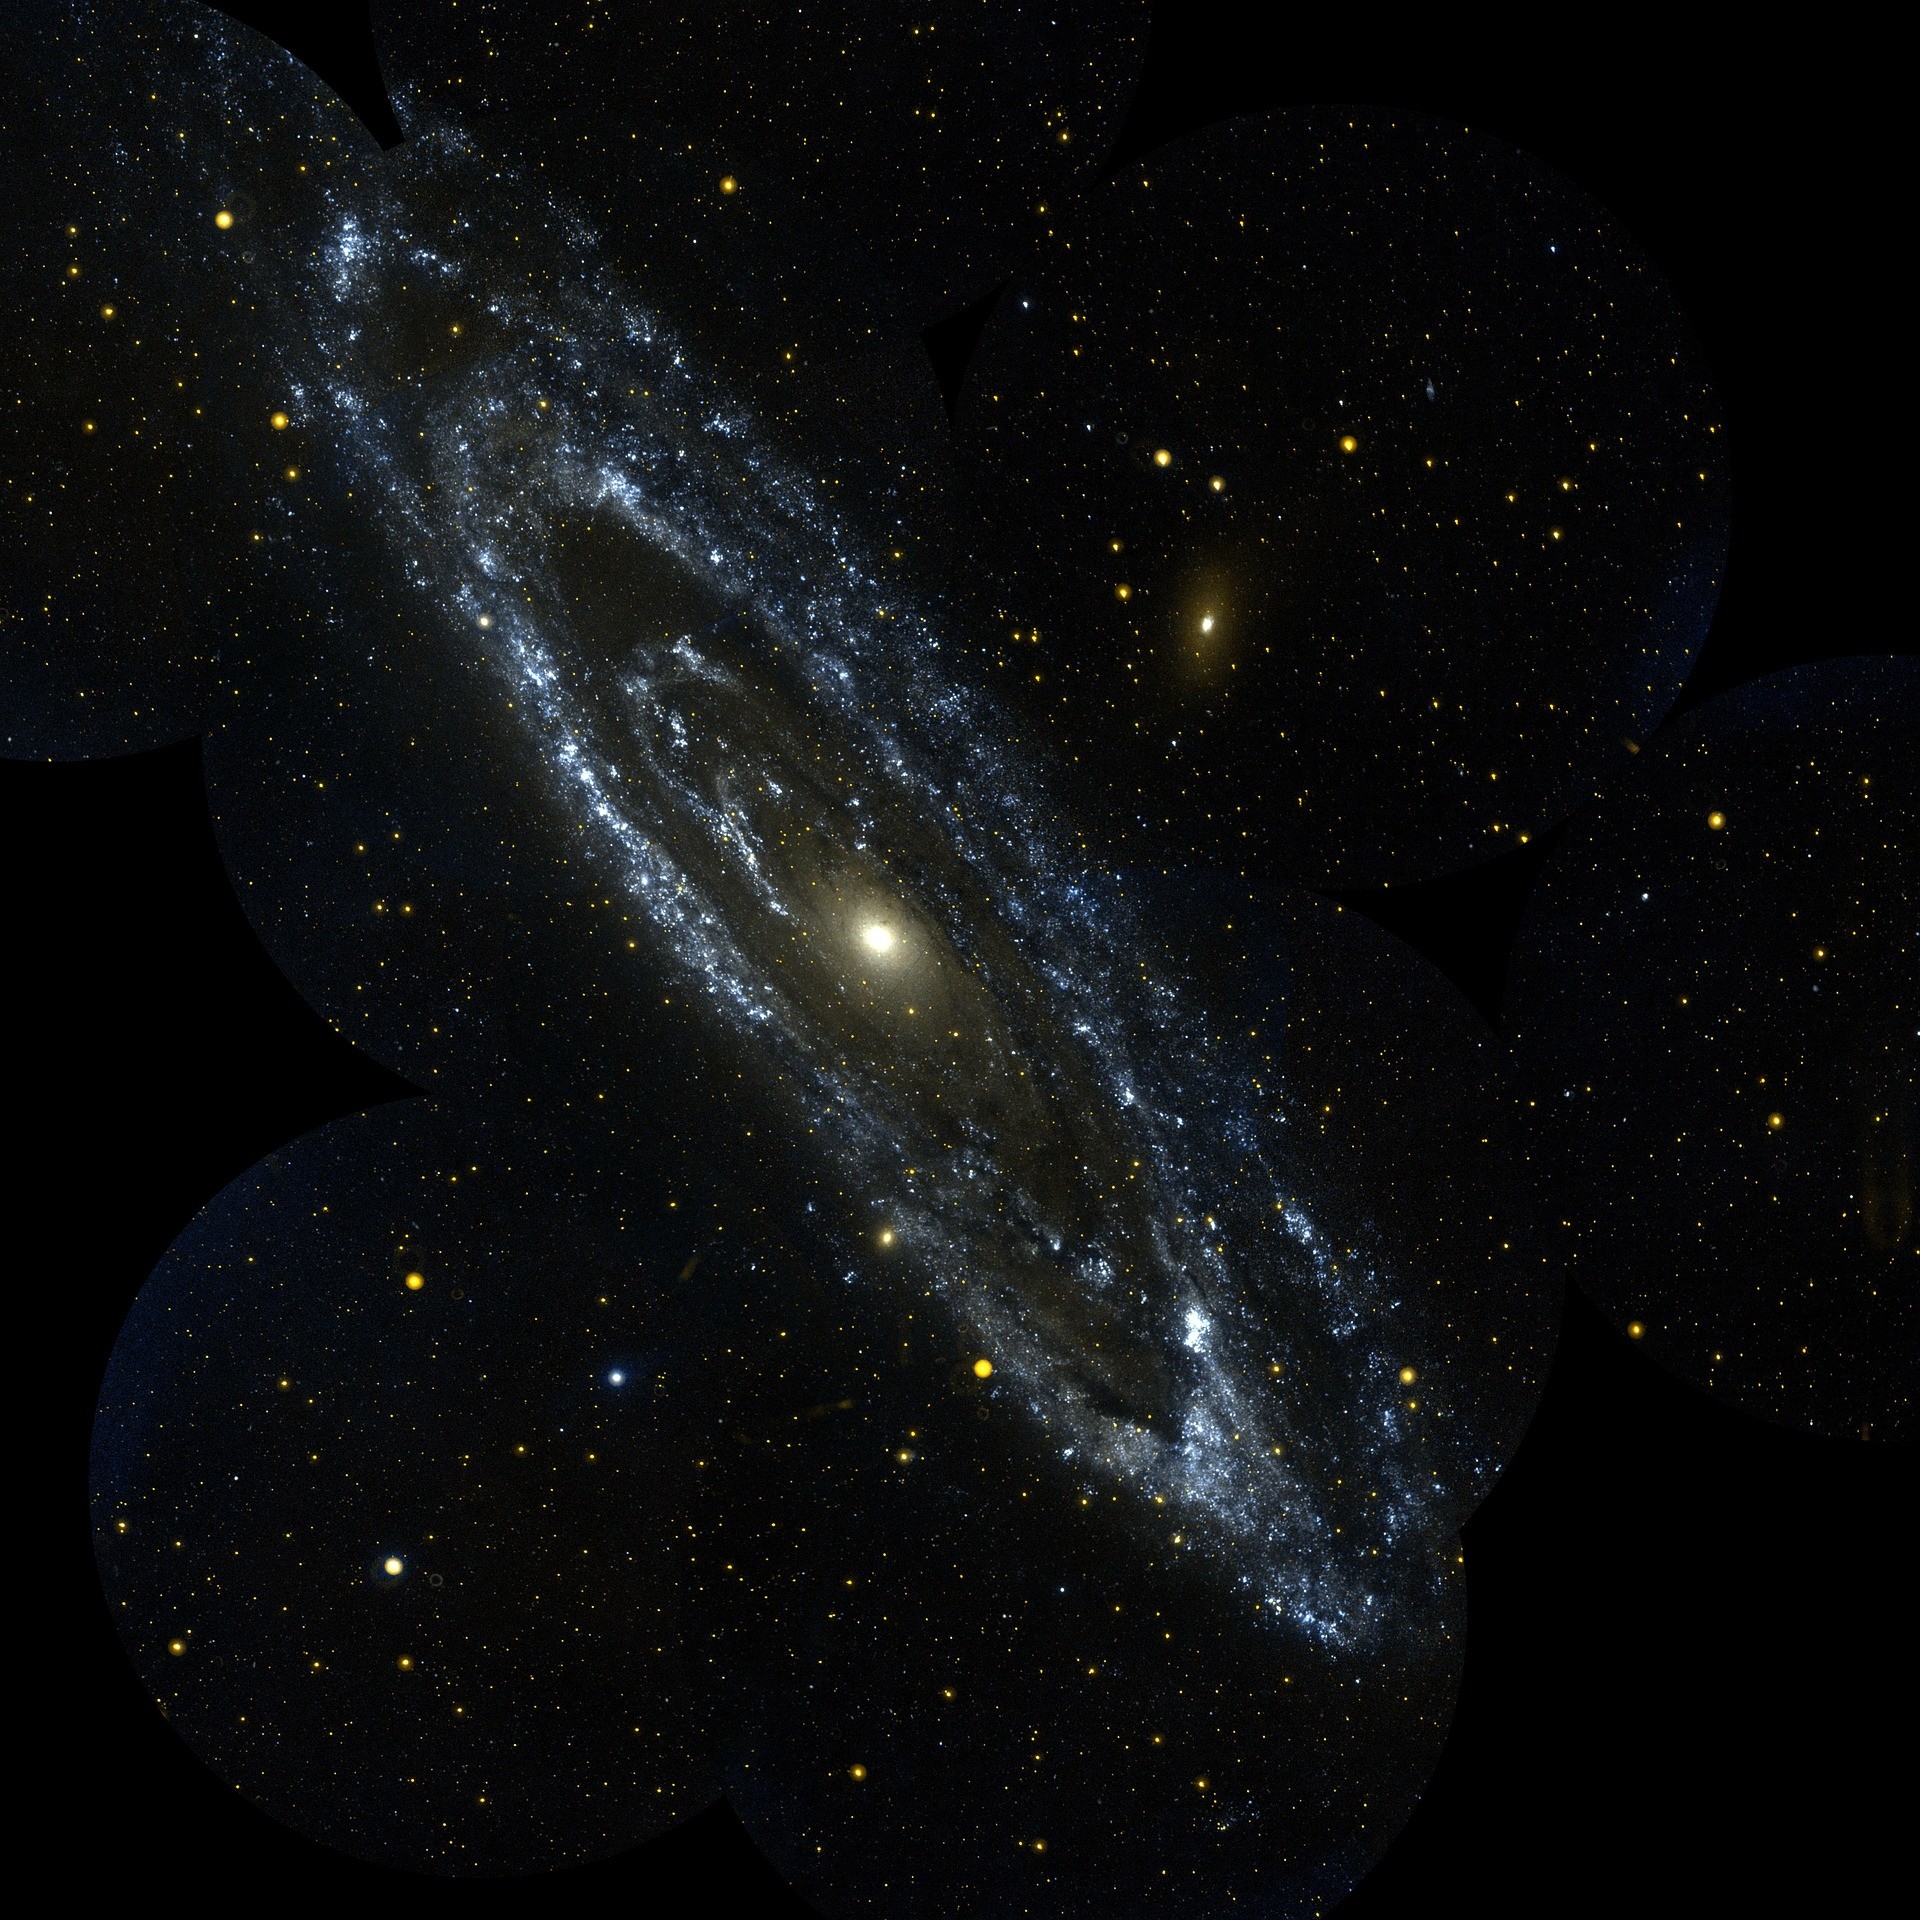 Galáxia de Andrômeda, a mais massiva da Via Láctea, está vindo em nossa direção (Foto: Pixabay)